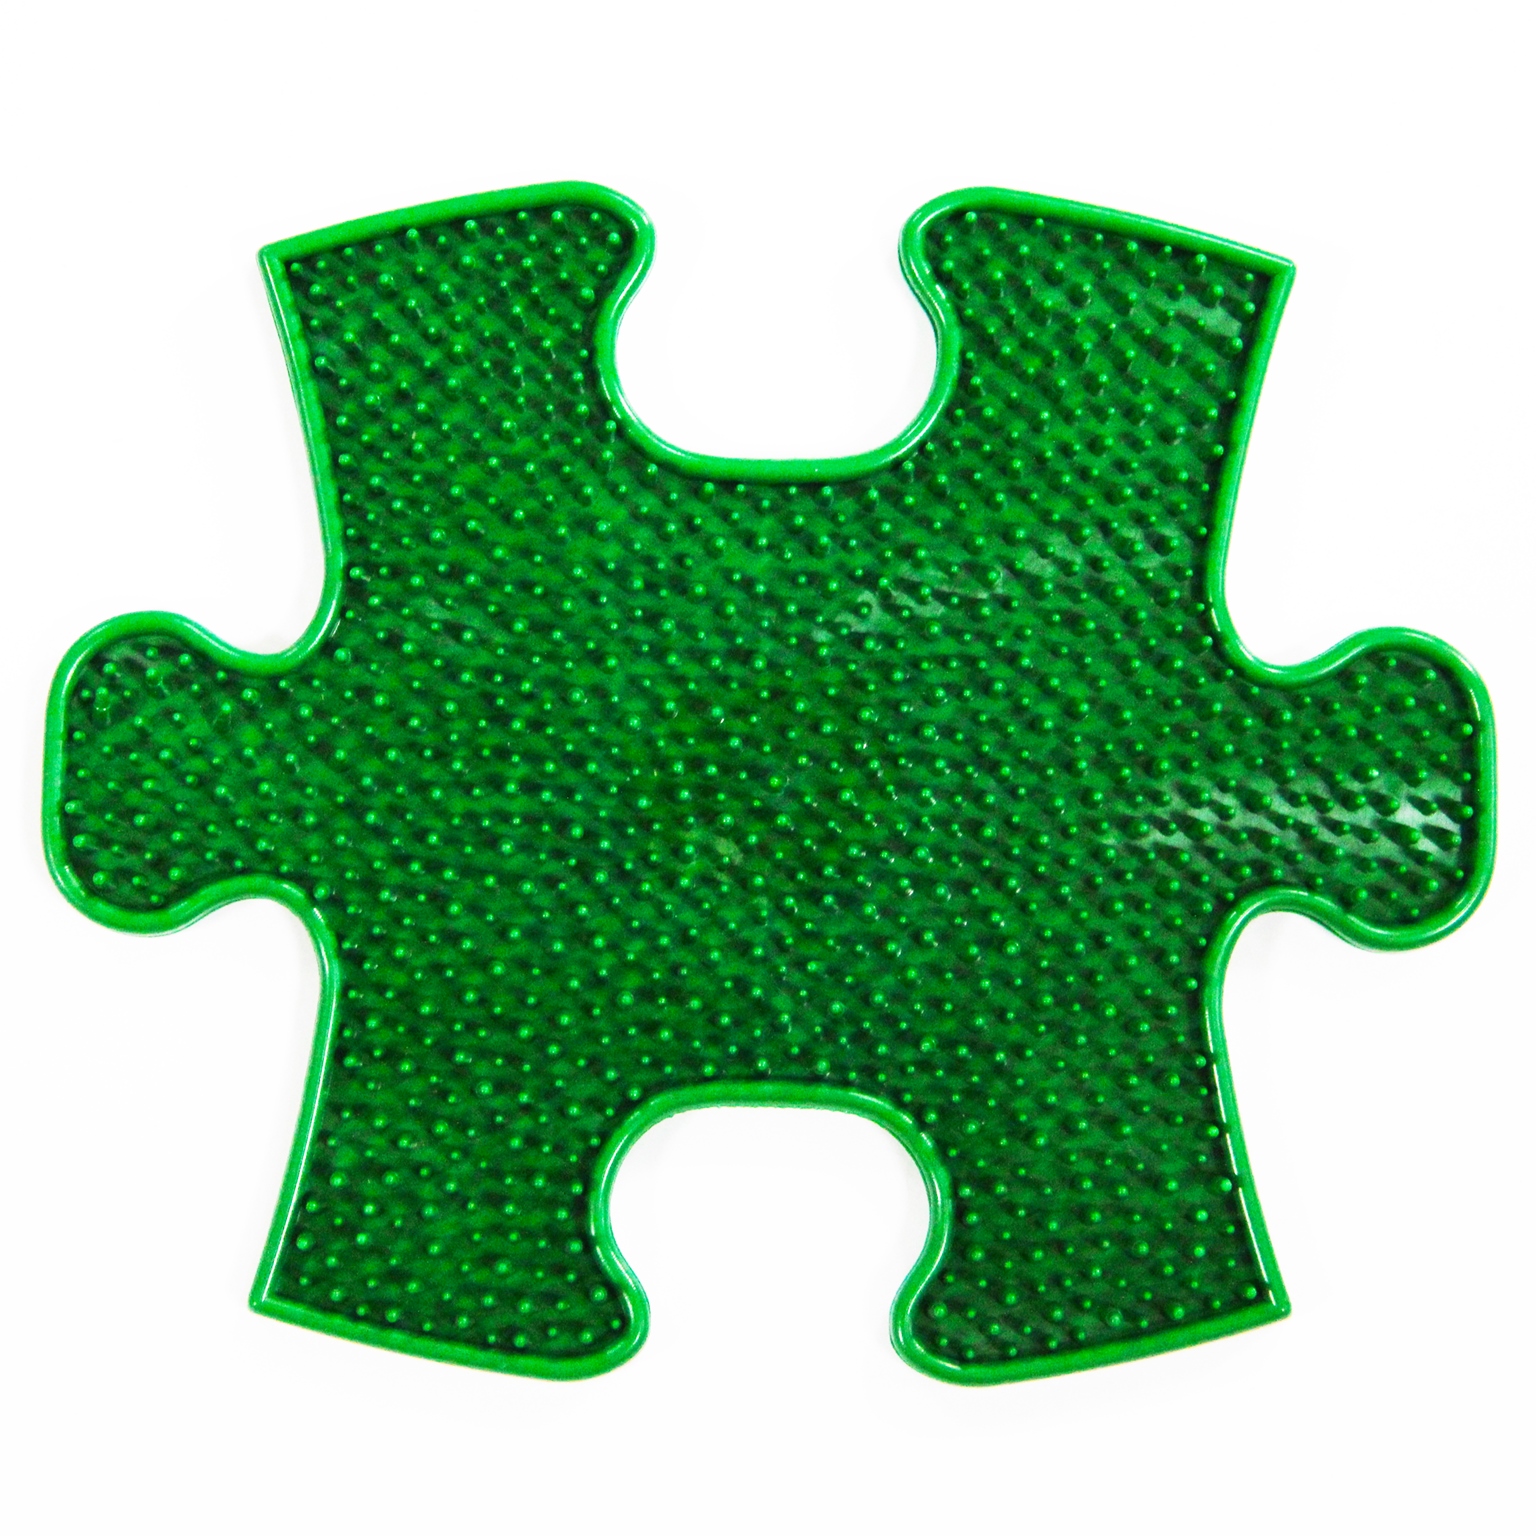 фото Модульный коврик играпол травка маленький зеленый